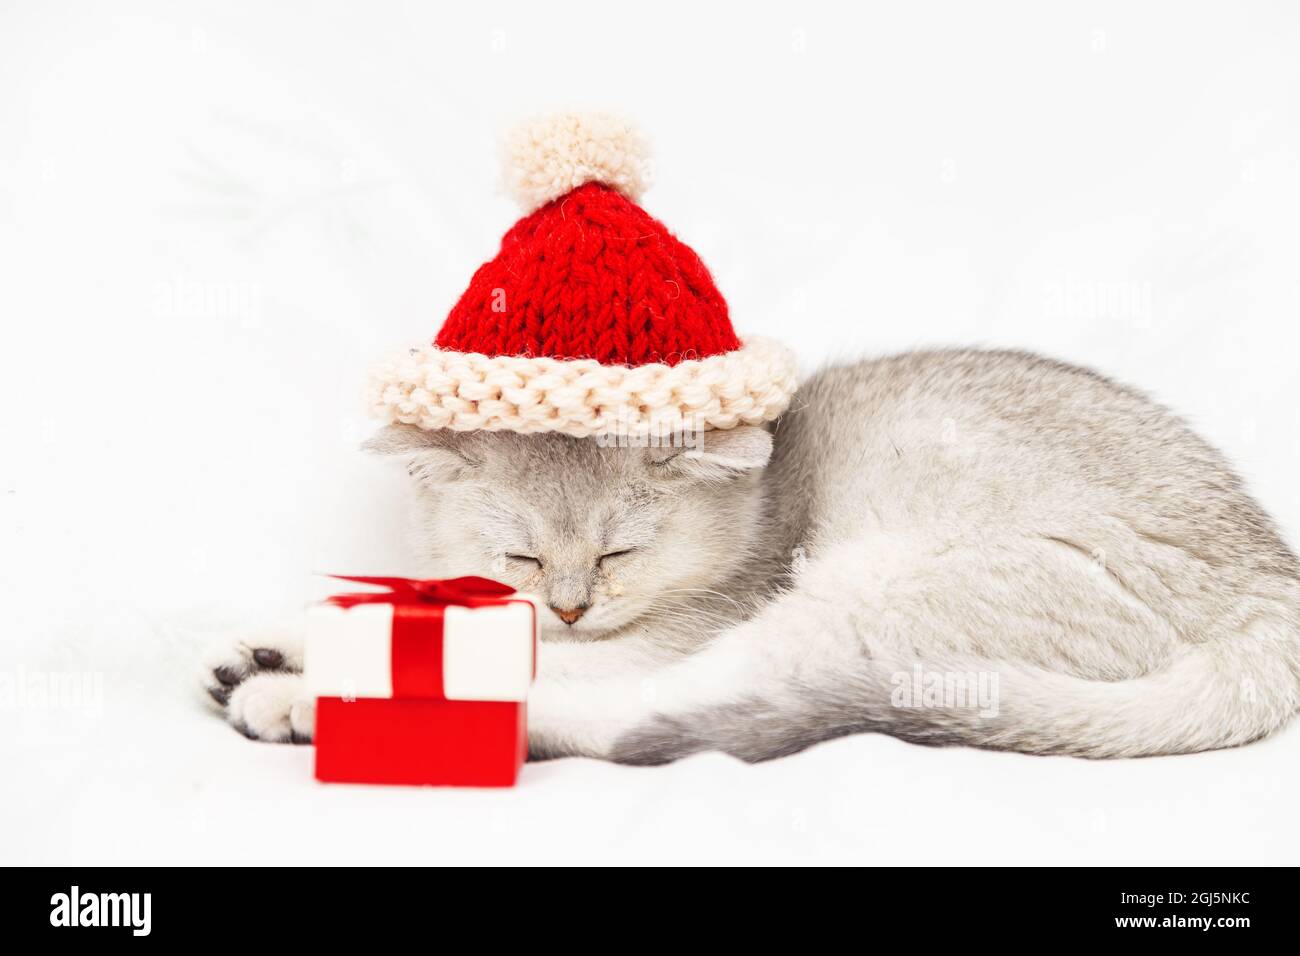 Kleines weißes britisches Kätzchen in einem roten Hut mit einer roten Geschenkbox schläft auf einer weißen Decke. Witziges, neugieriges Haustier. Speicherplatz kopieren. Stockfoto